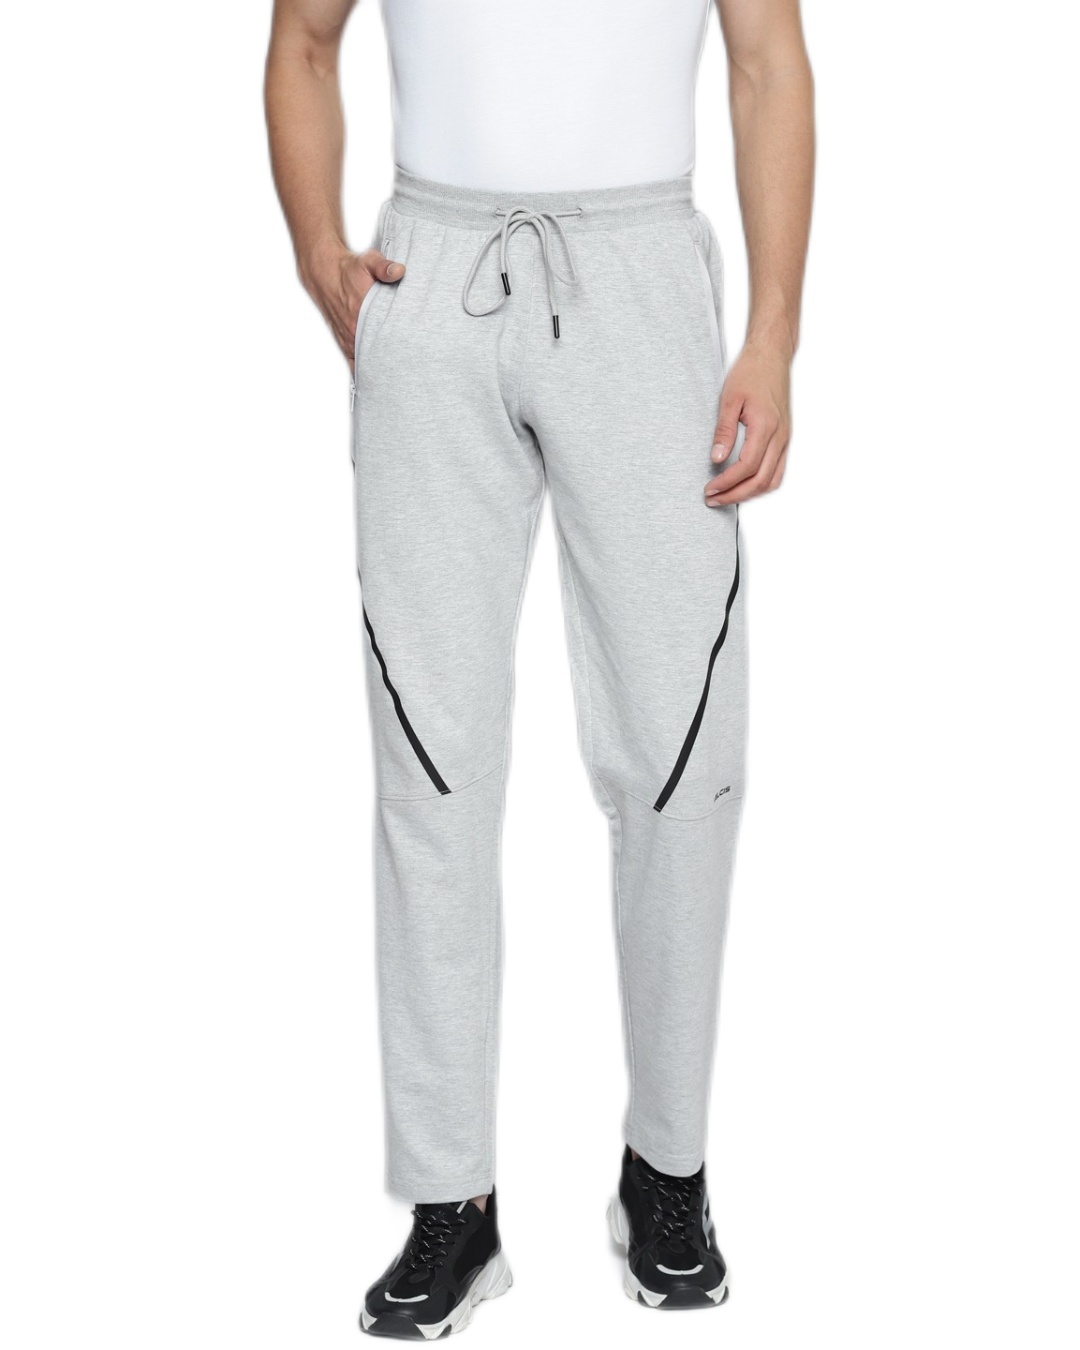 Buy Men's Grey Slim Fit Track Pants for Men Grey Online at Bewakoof